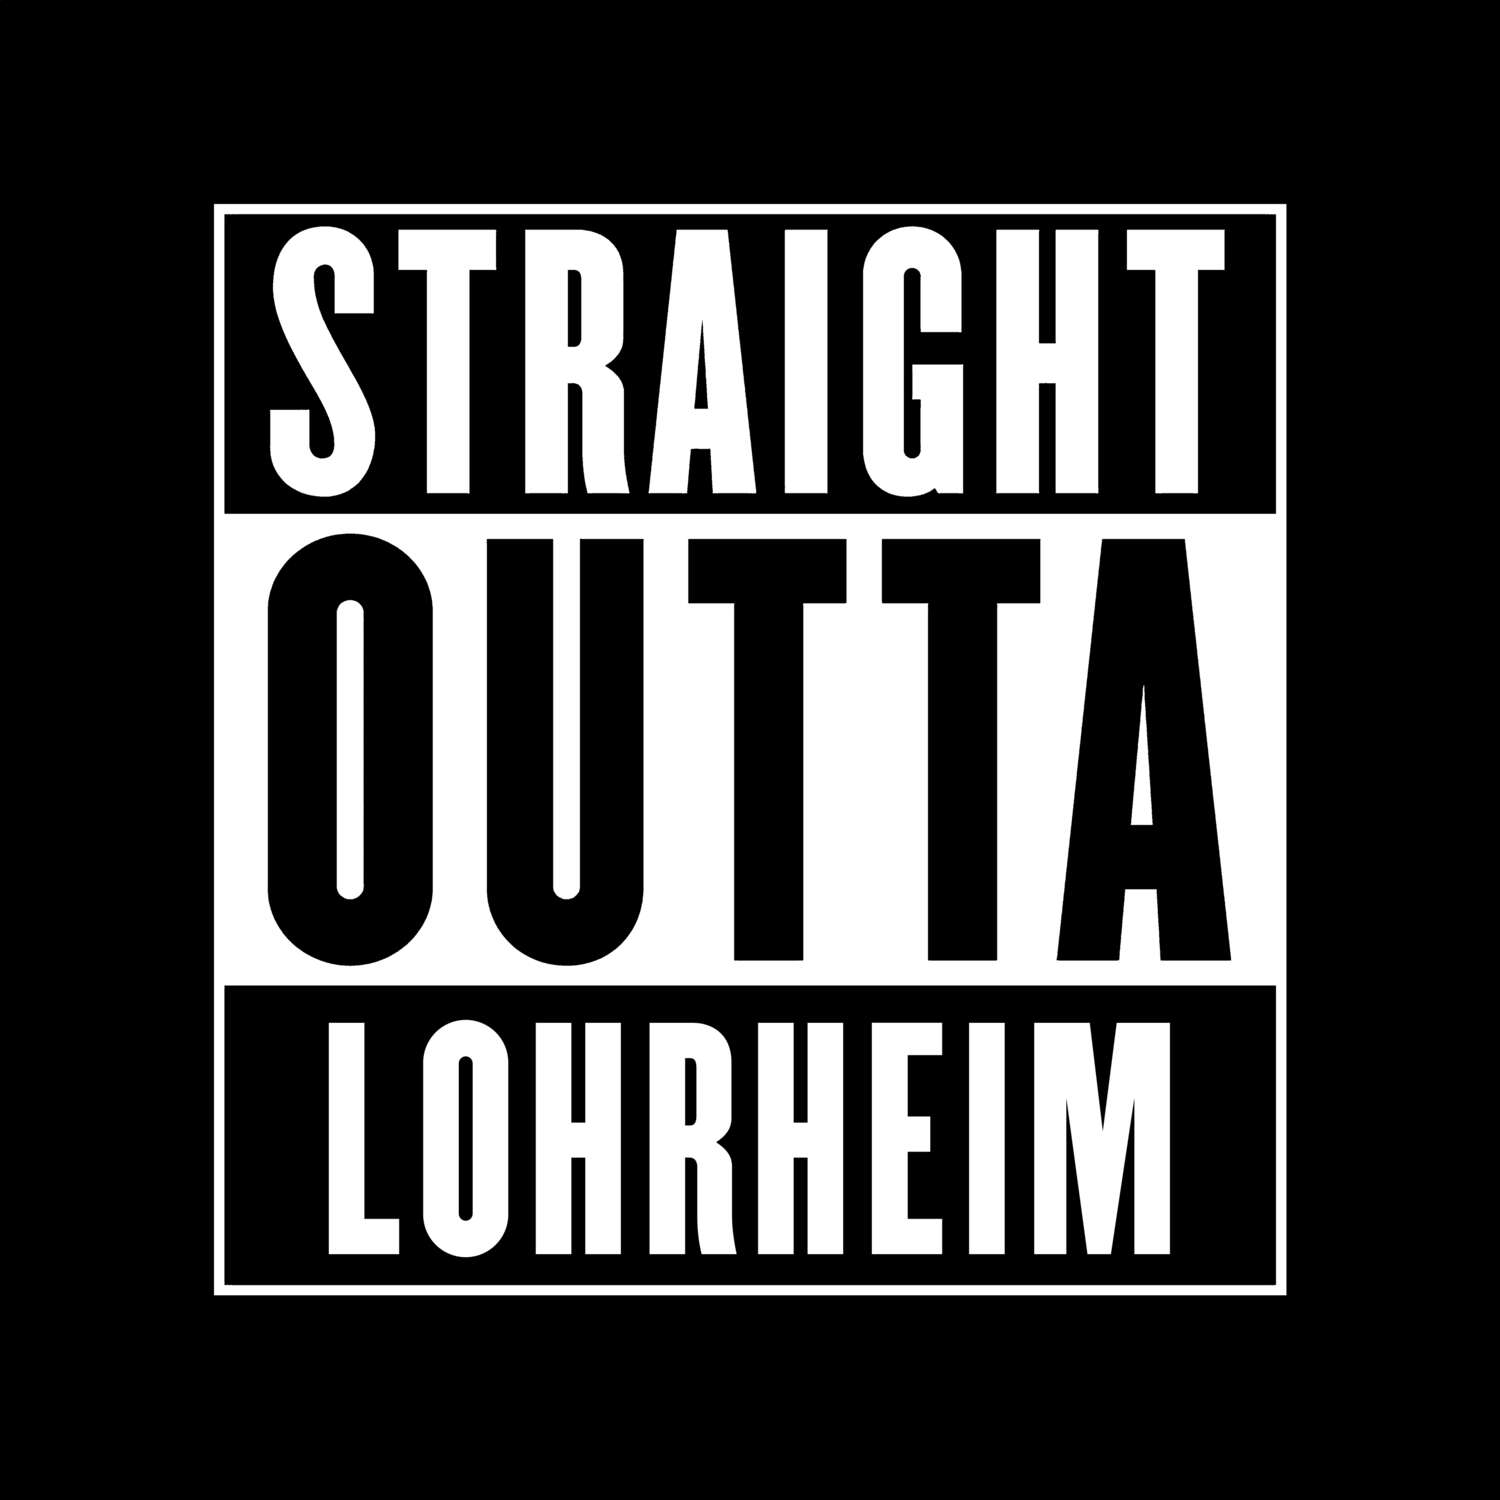 Lohrheim T-Shirt »Straight Outta«